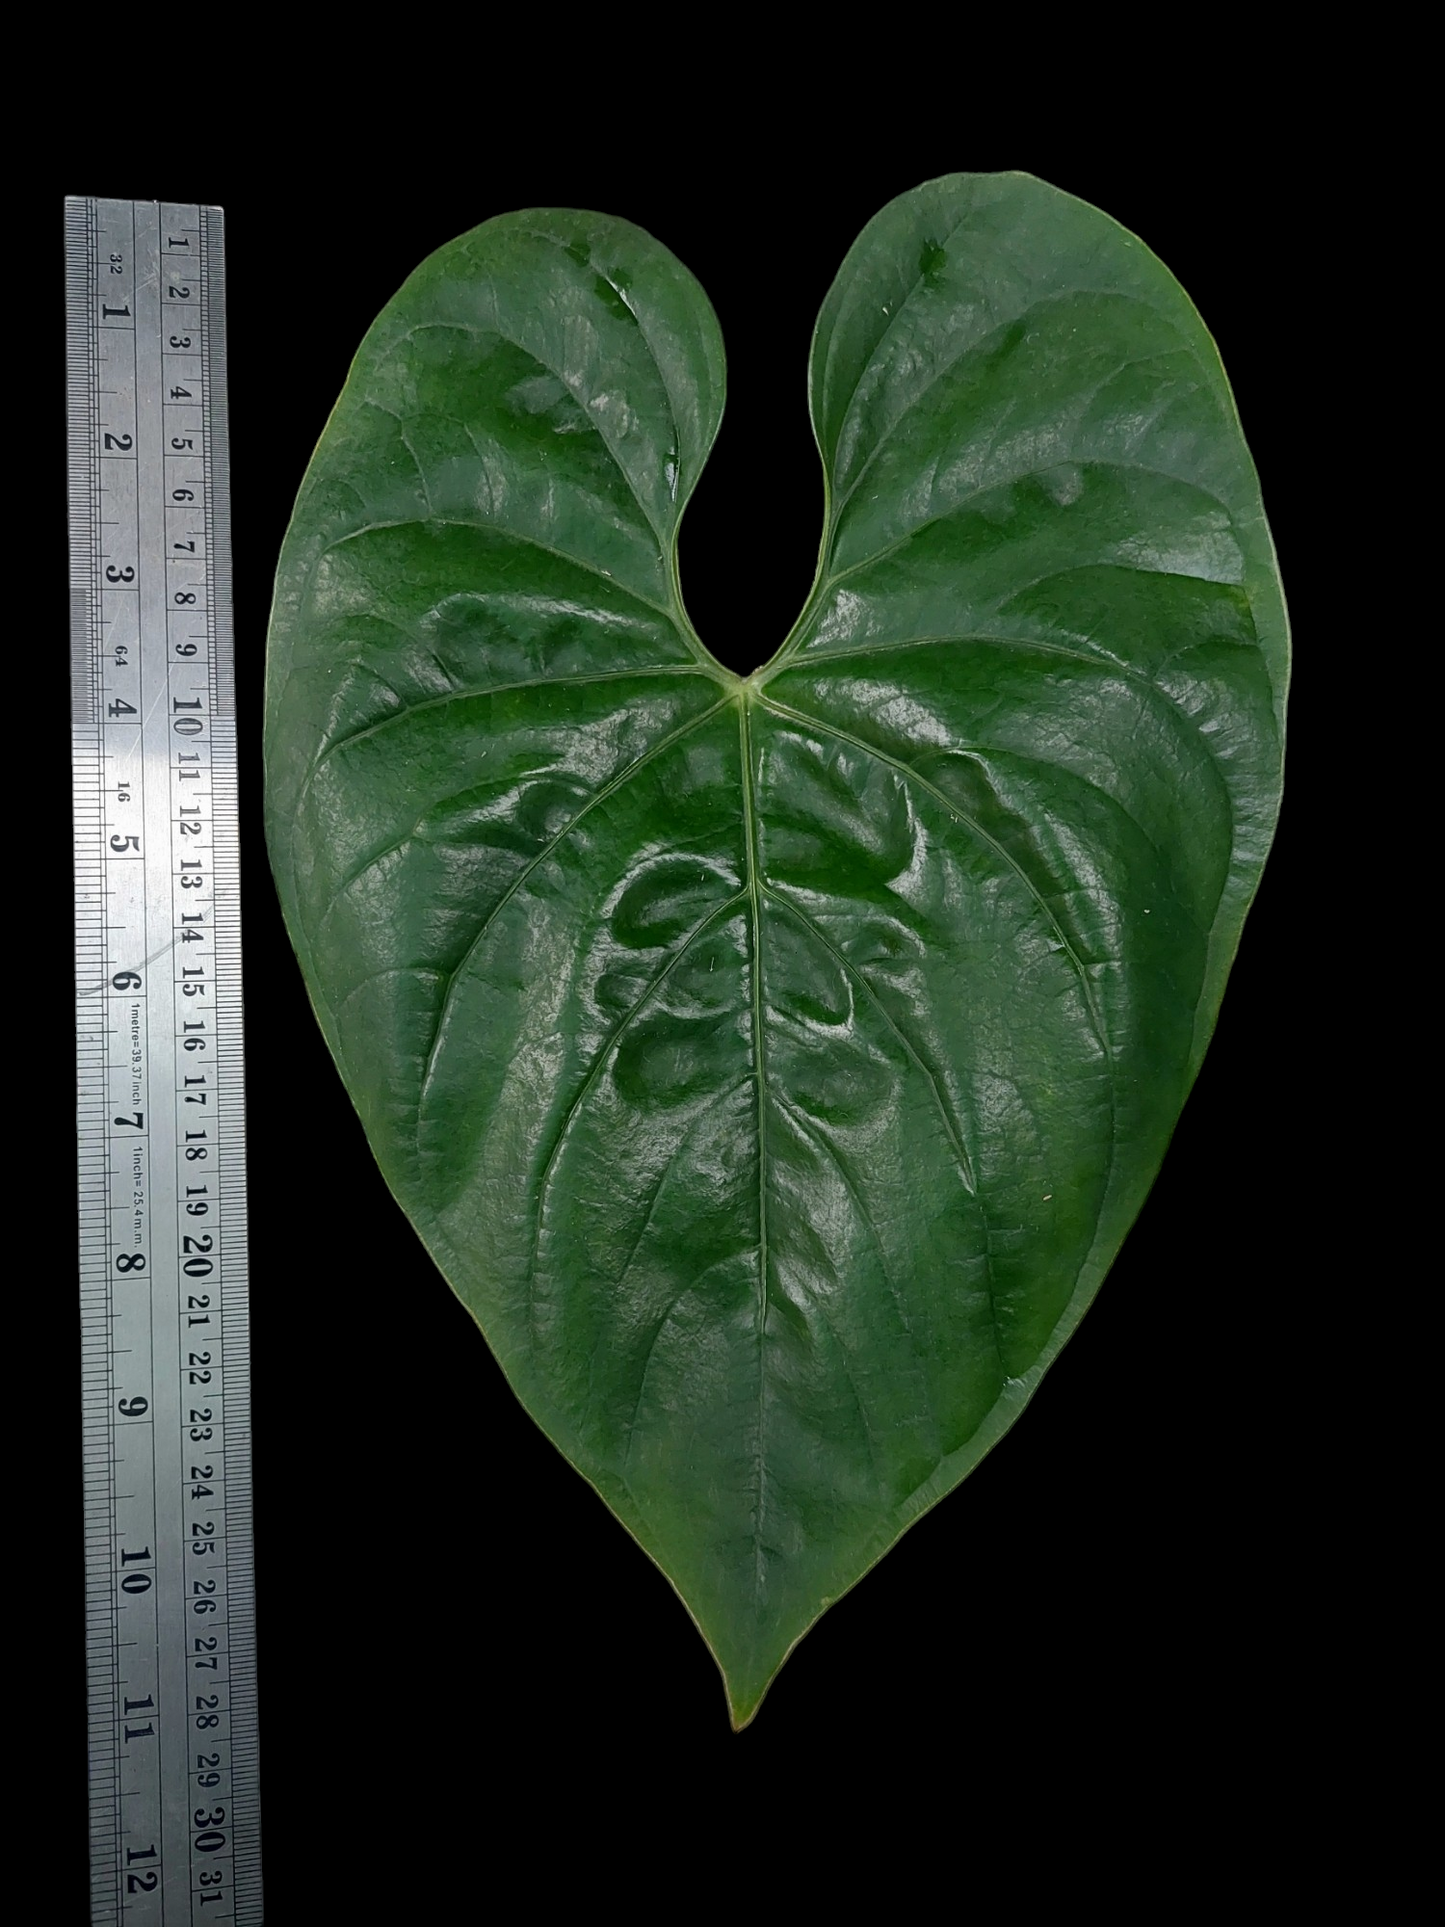 Anthurium sp. Iquitos (EXACT PLANT)